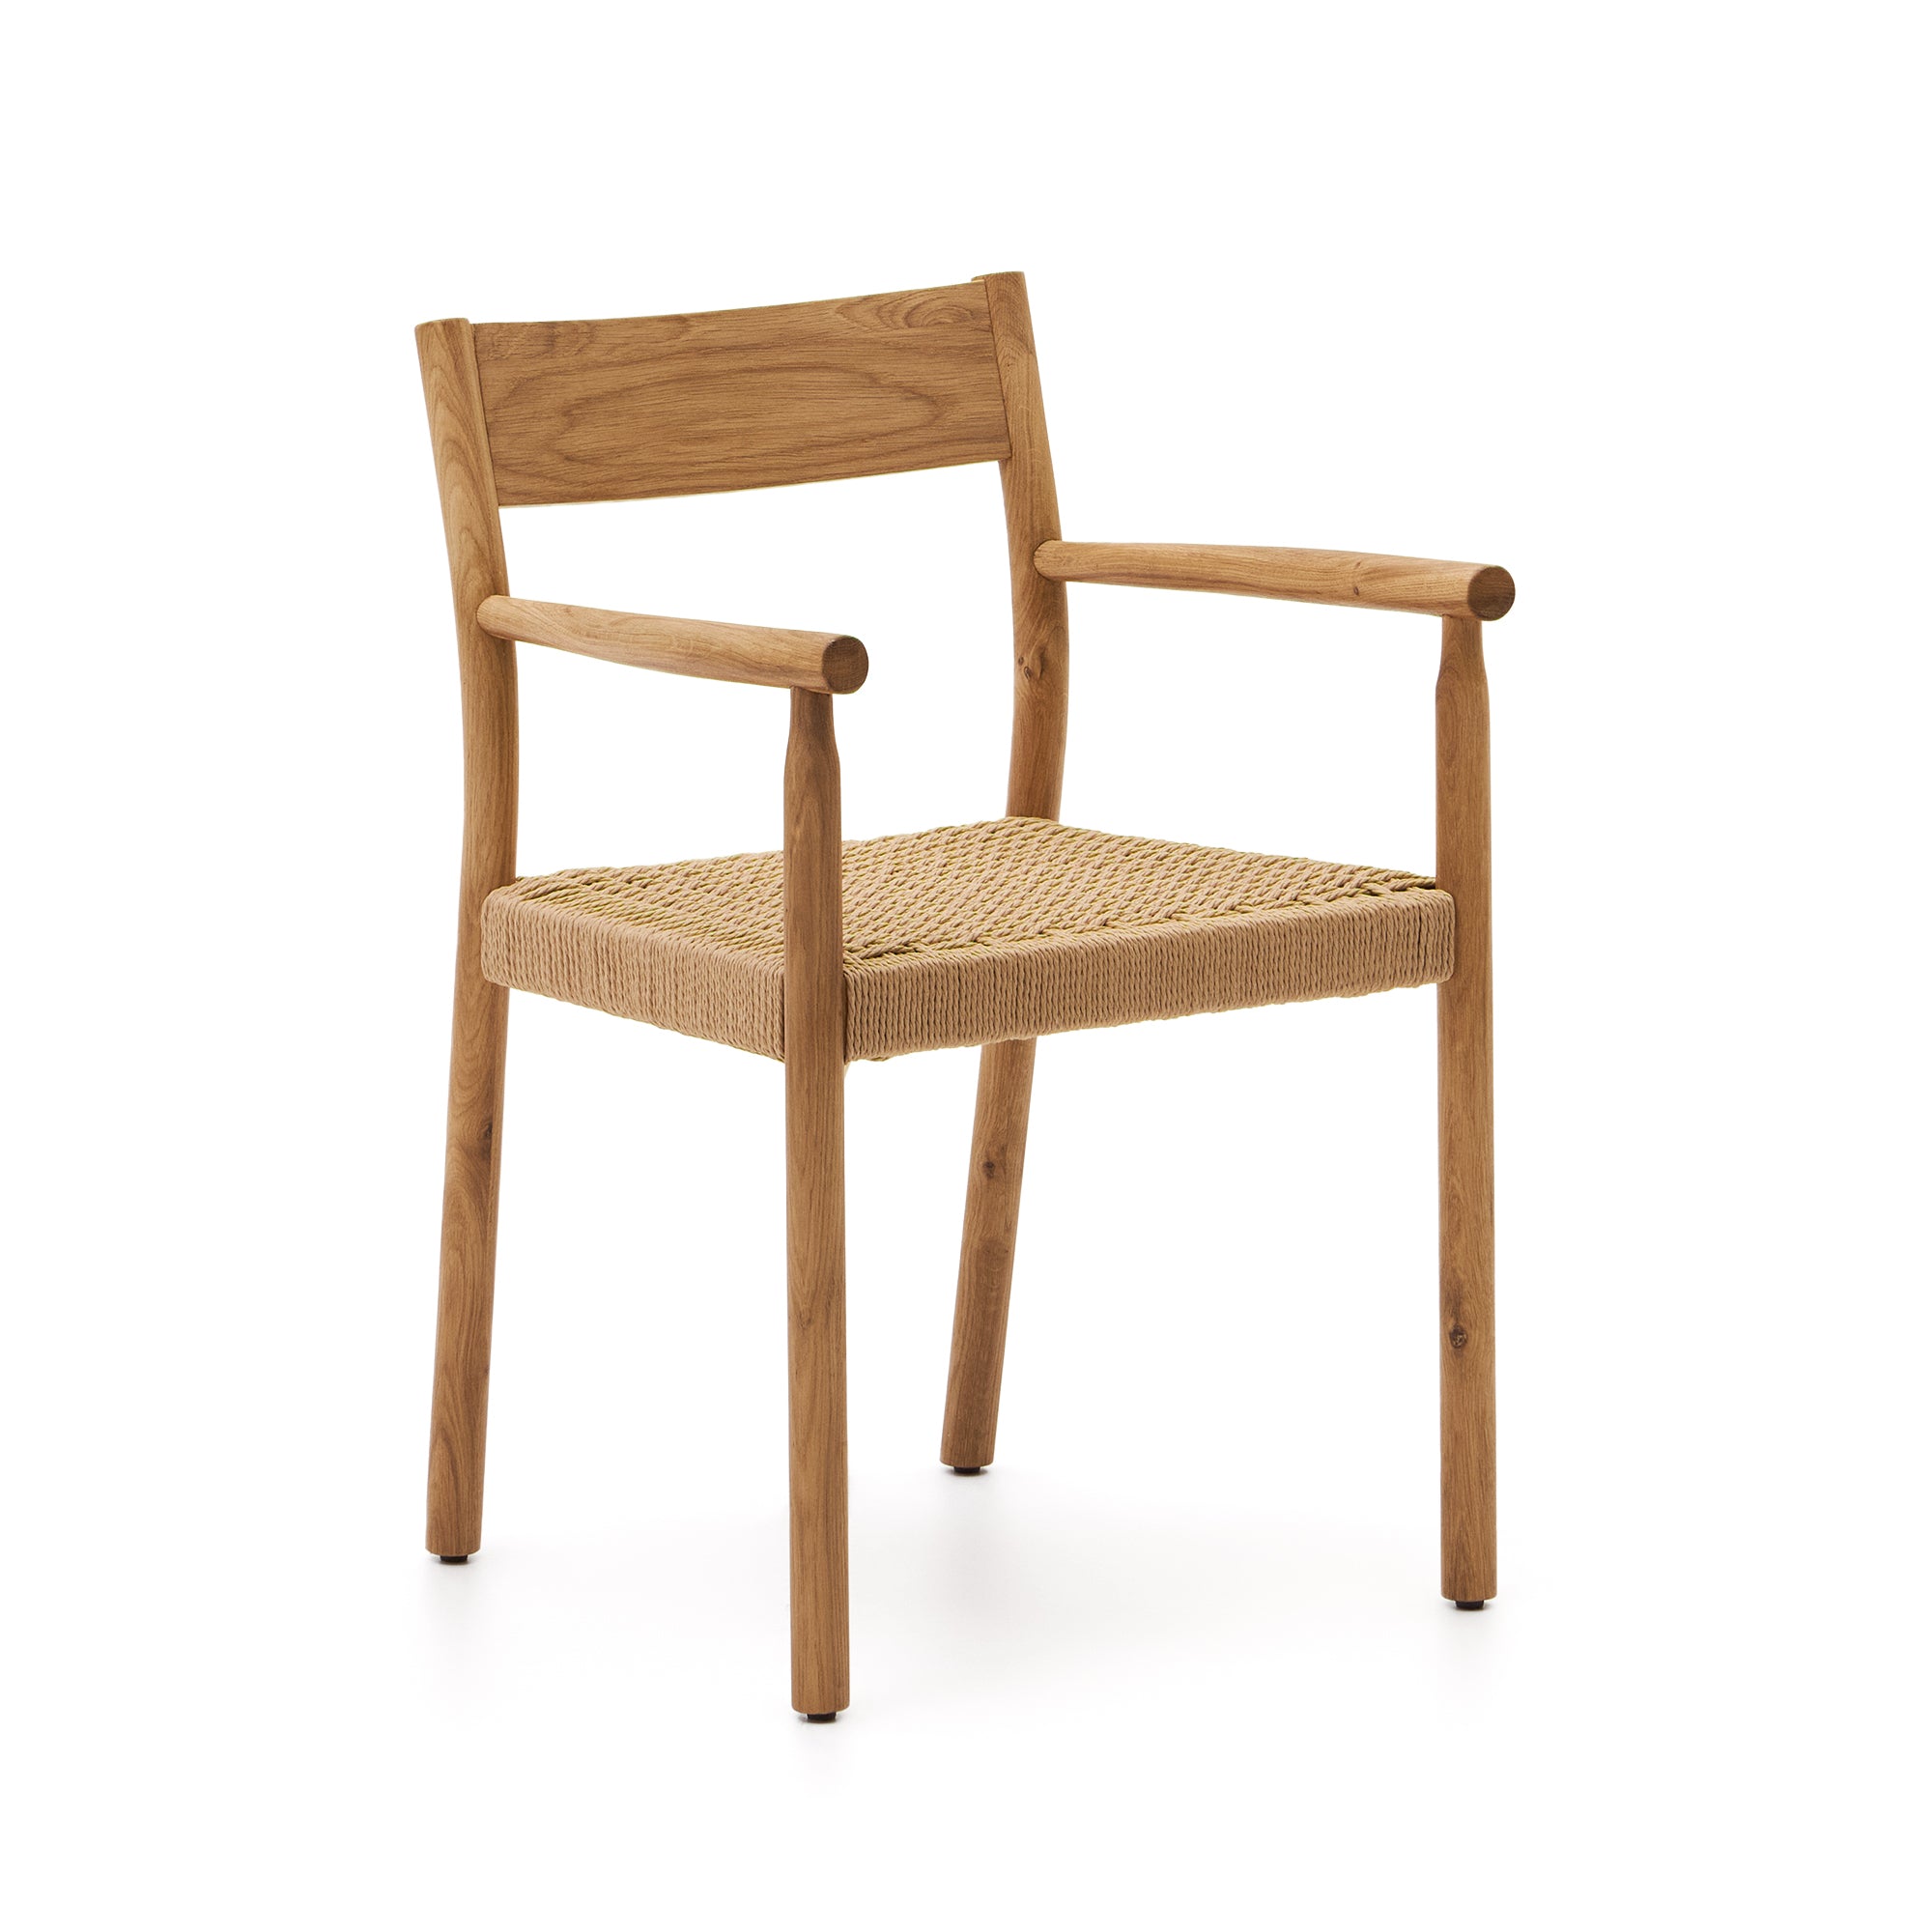 Yalia szék 100% FSC tömör tölgyfából, natúr kivitelben, kötél ülőfelülettel.